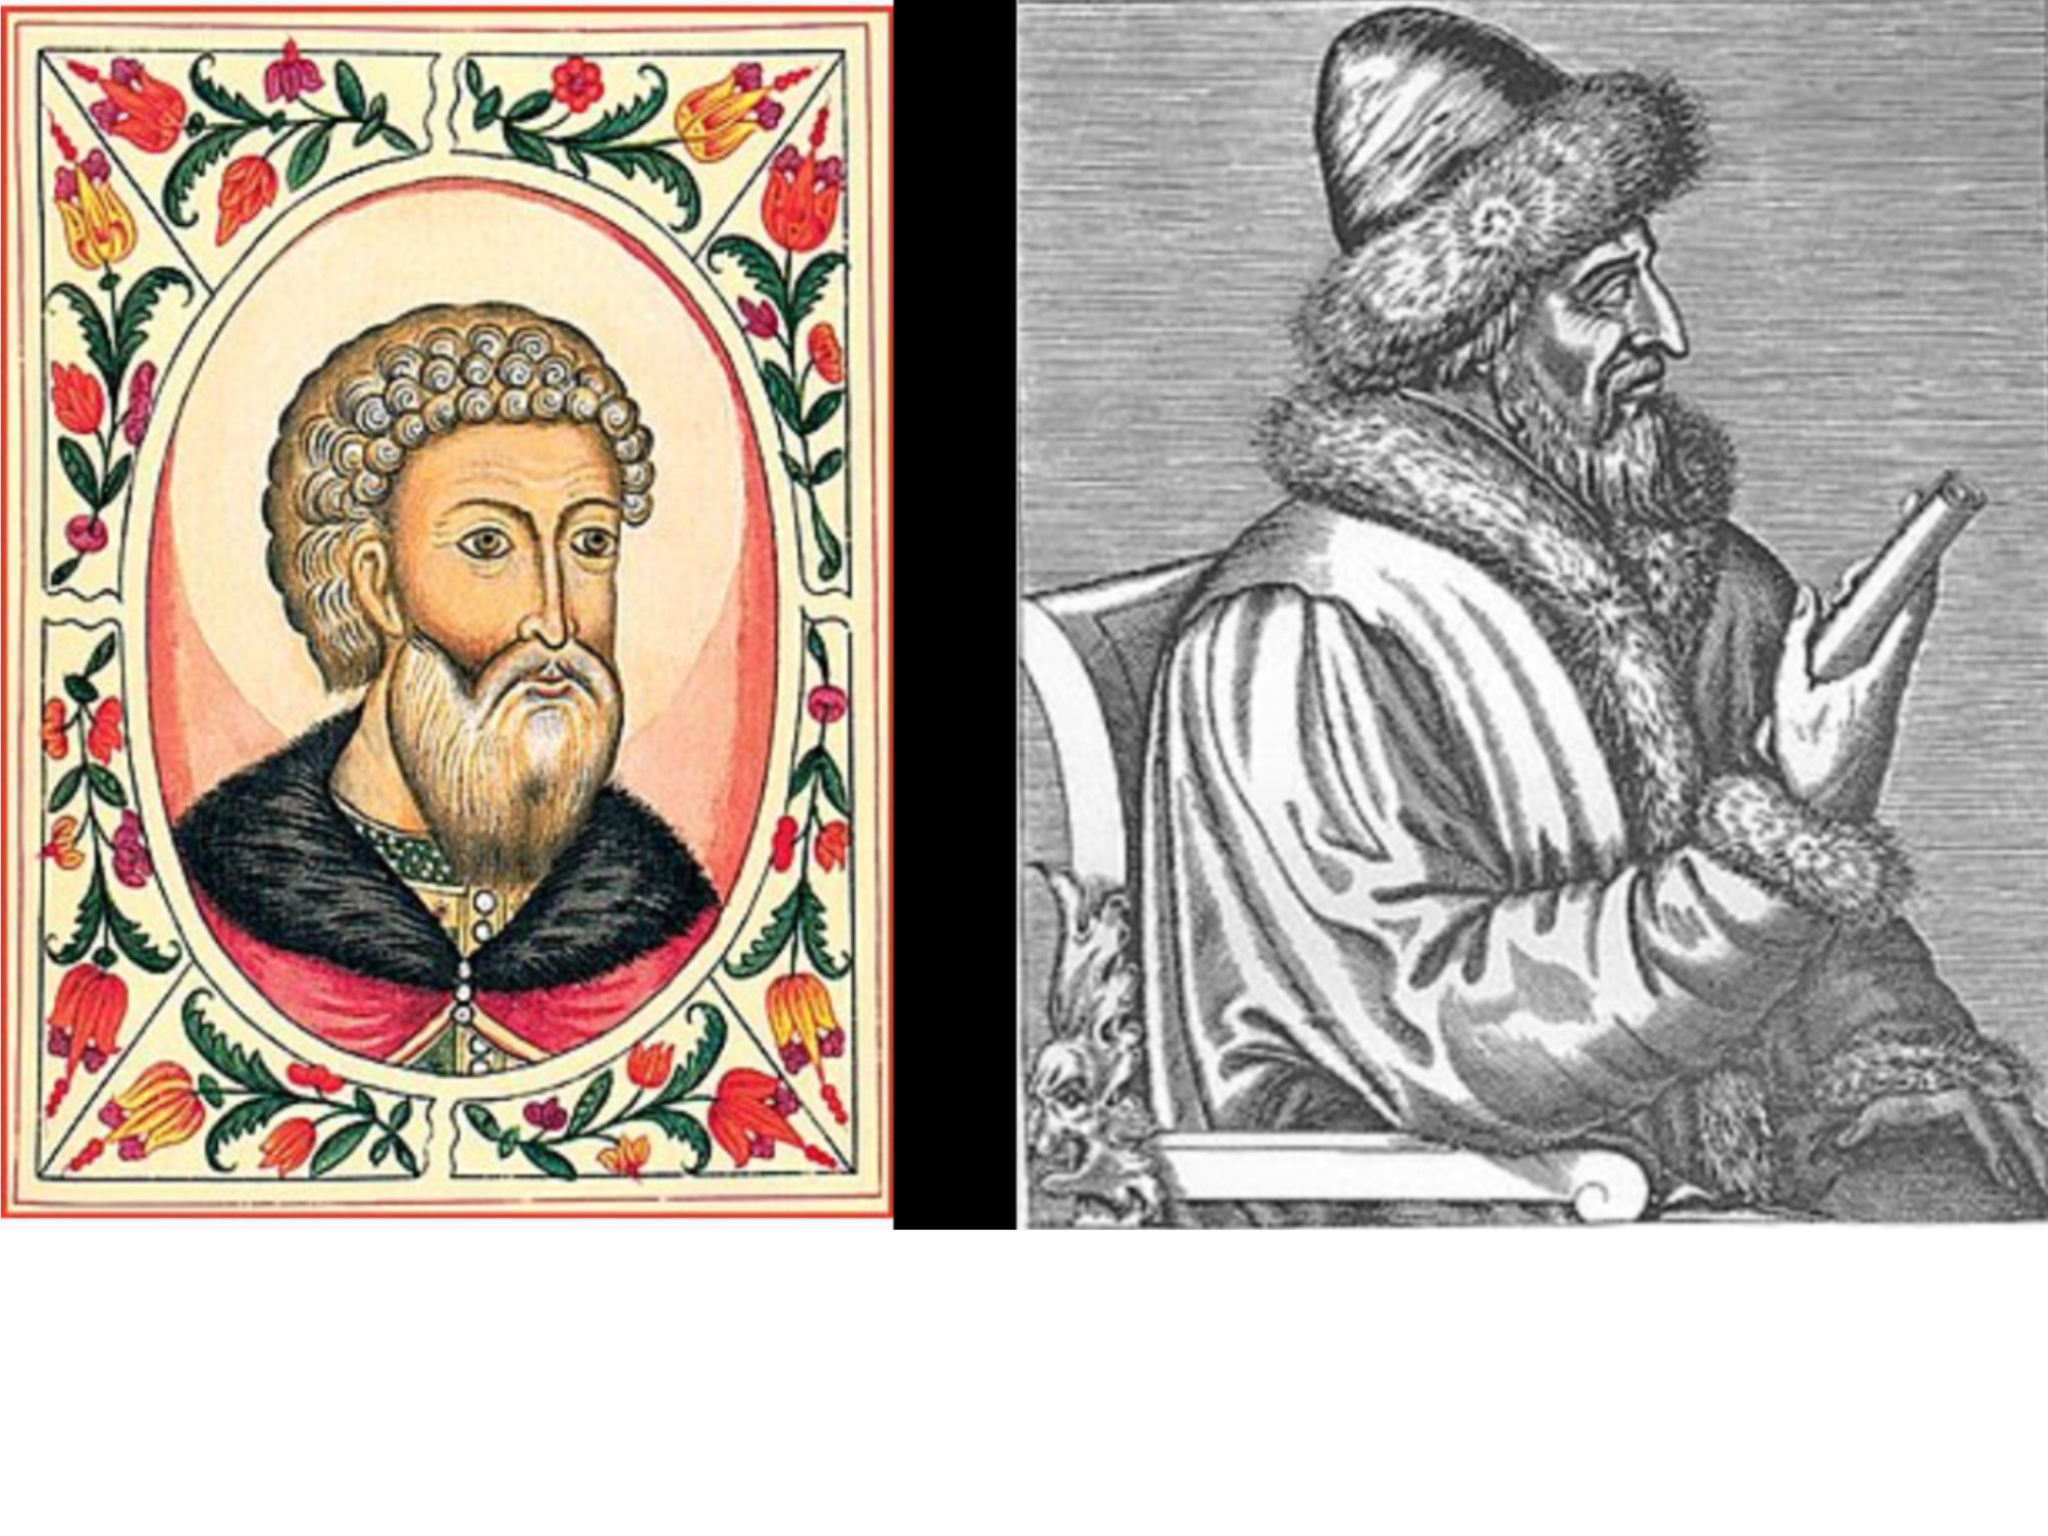 Судьба василия 3. Василия III (1505-1533).